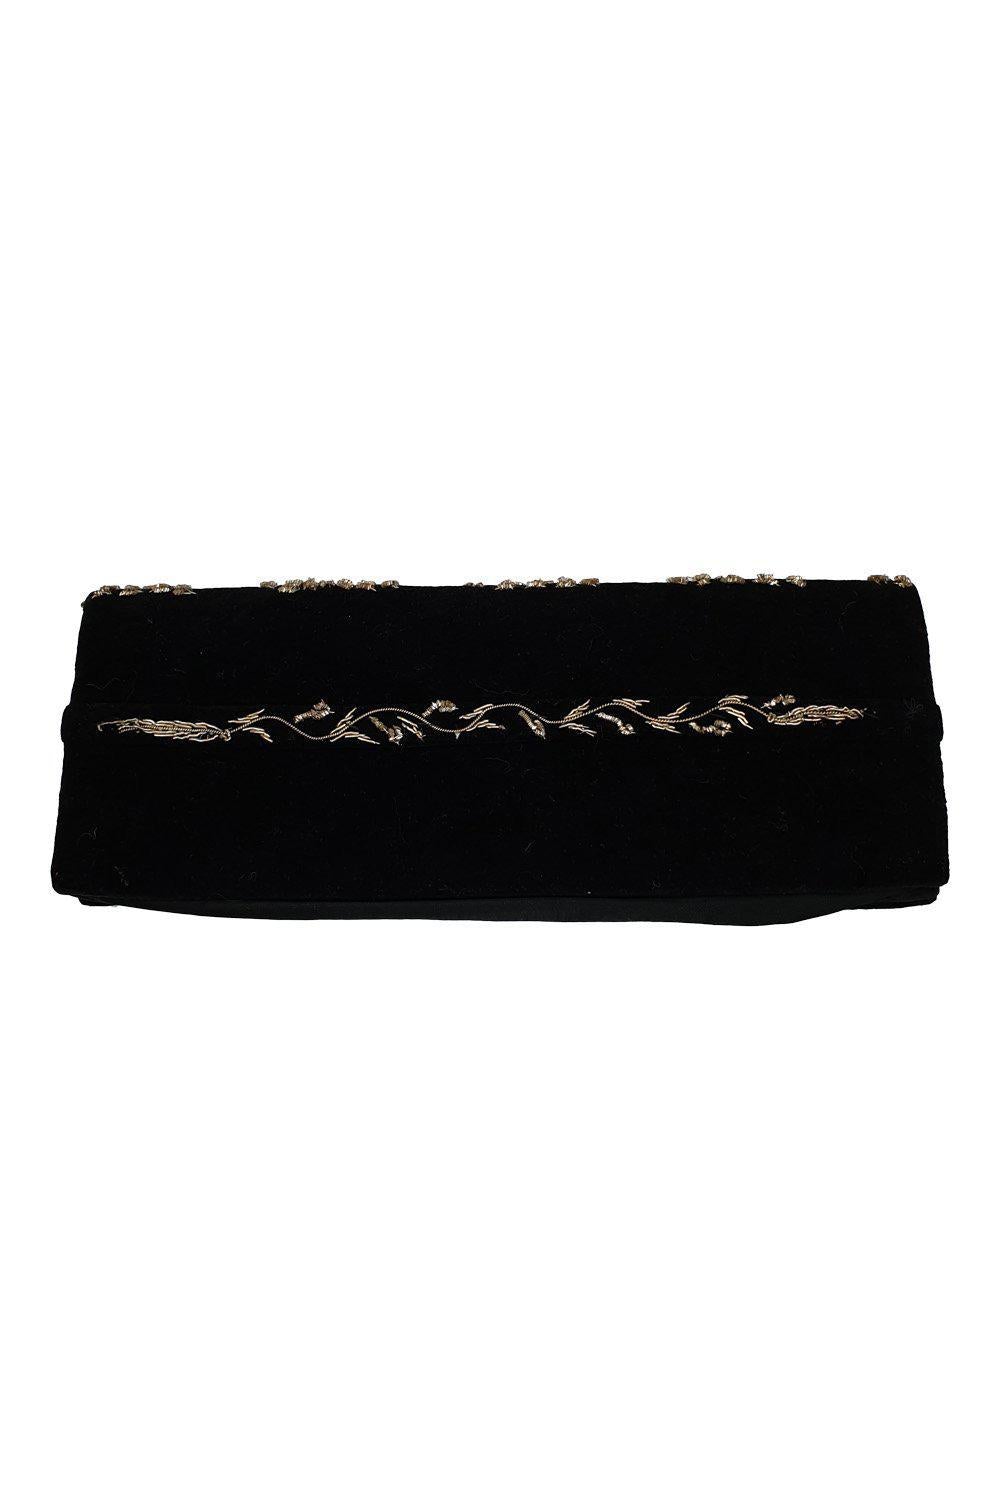 VINTAGE 1930s Black Velvet Long Rectangular Embroidered Striped Zardozi Clutch Bag (S)-Unbranded-The Freperie